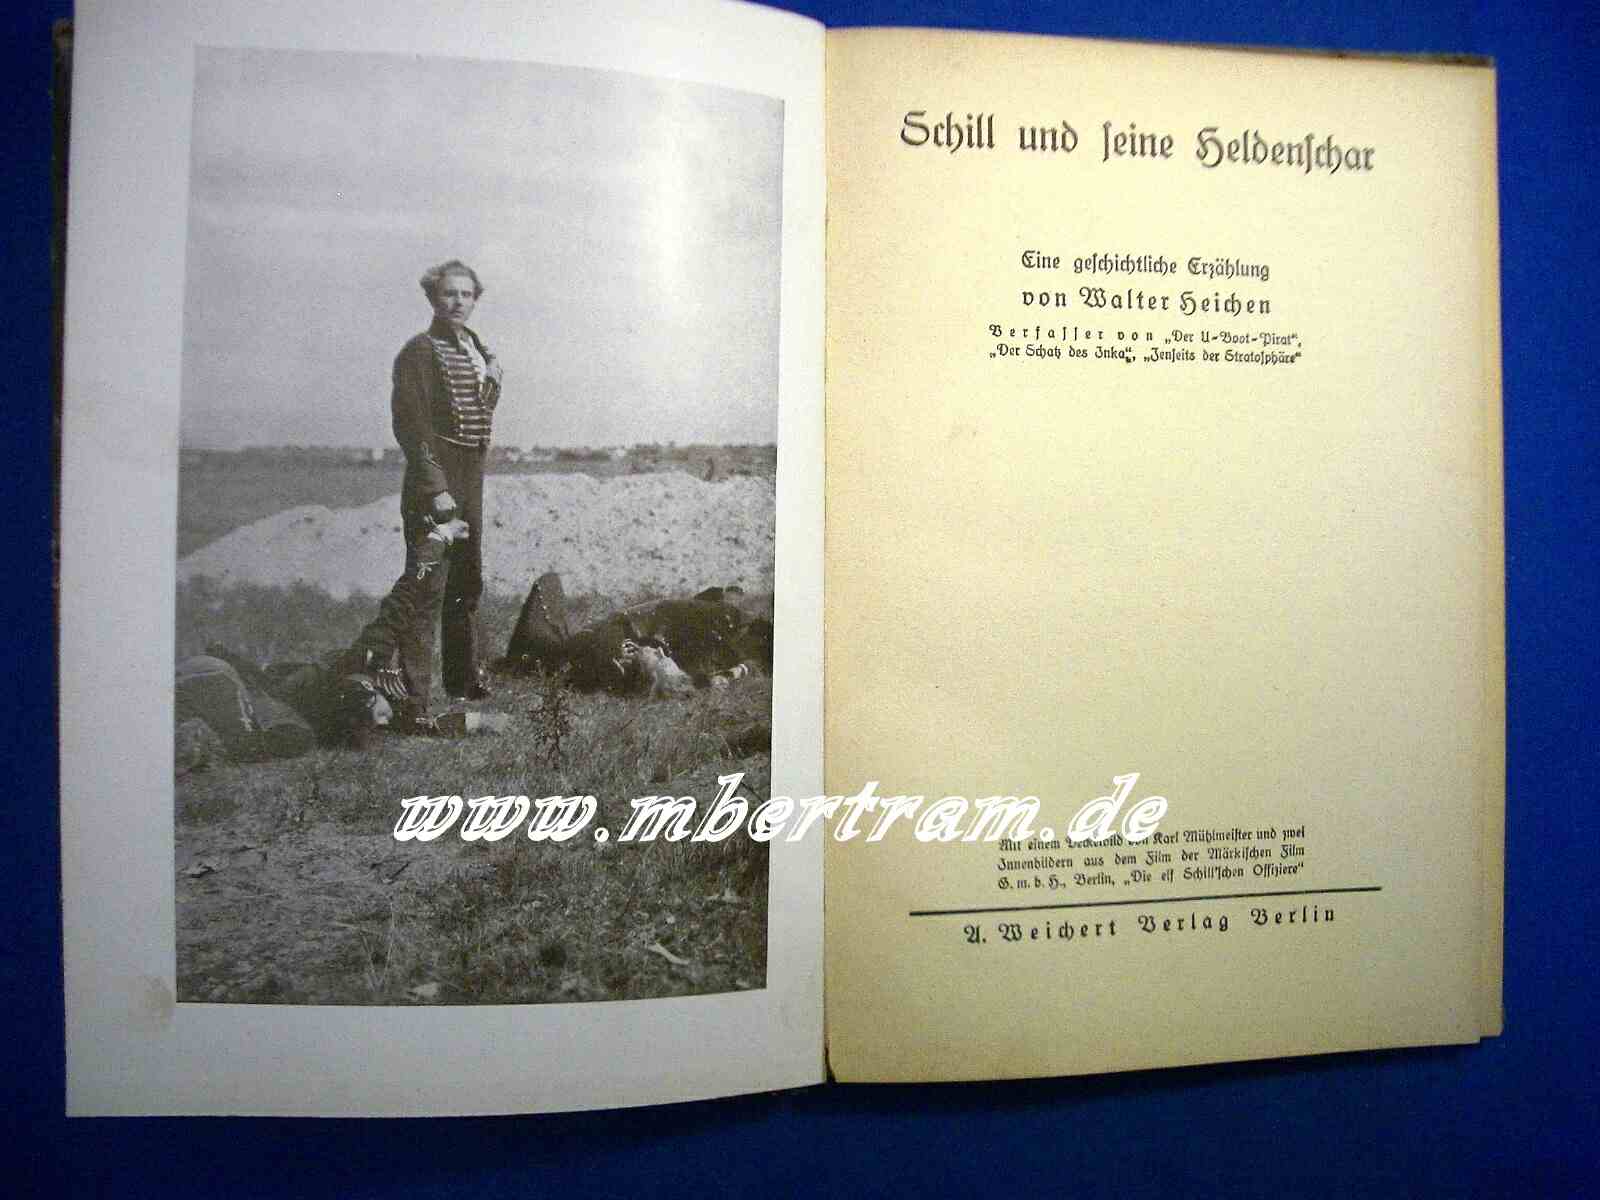 Walter Heichen, Schill und seine Heldenschar